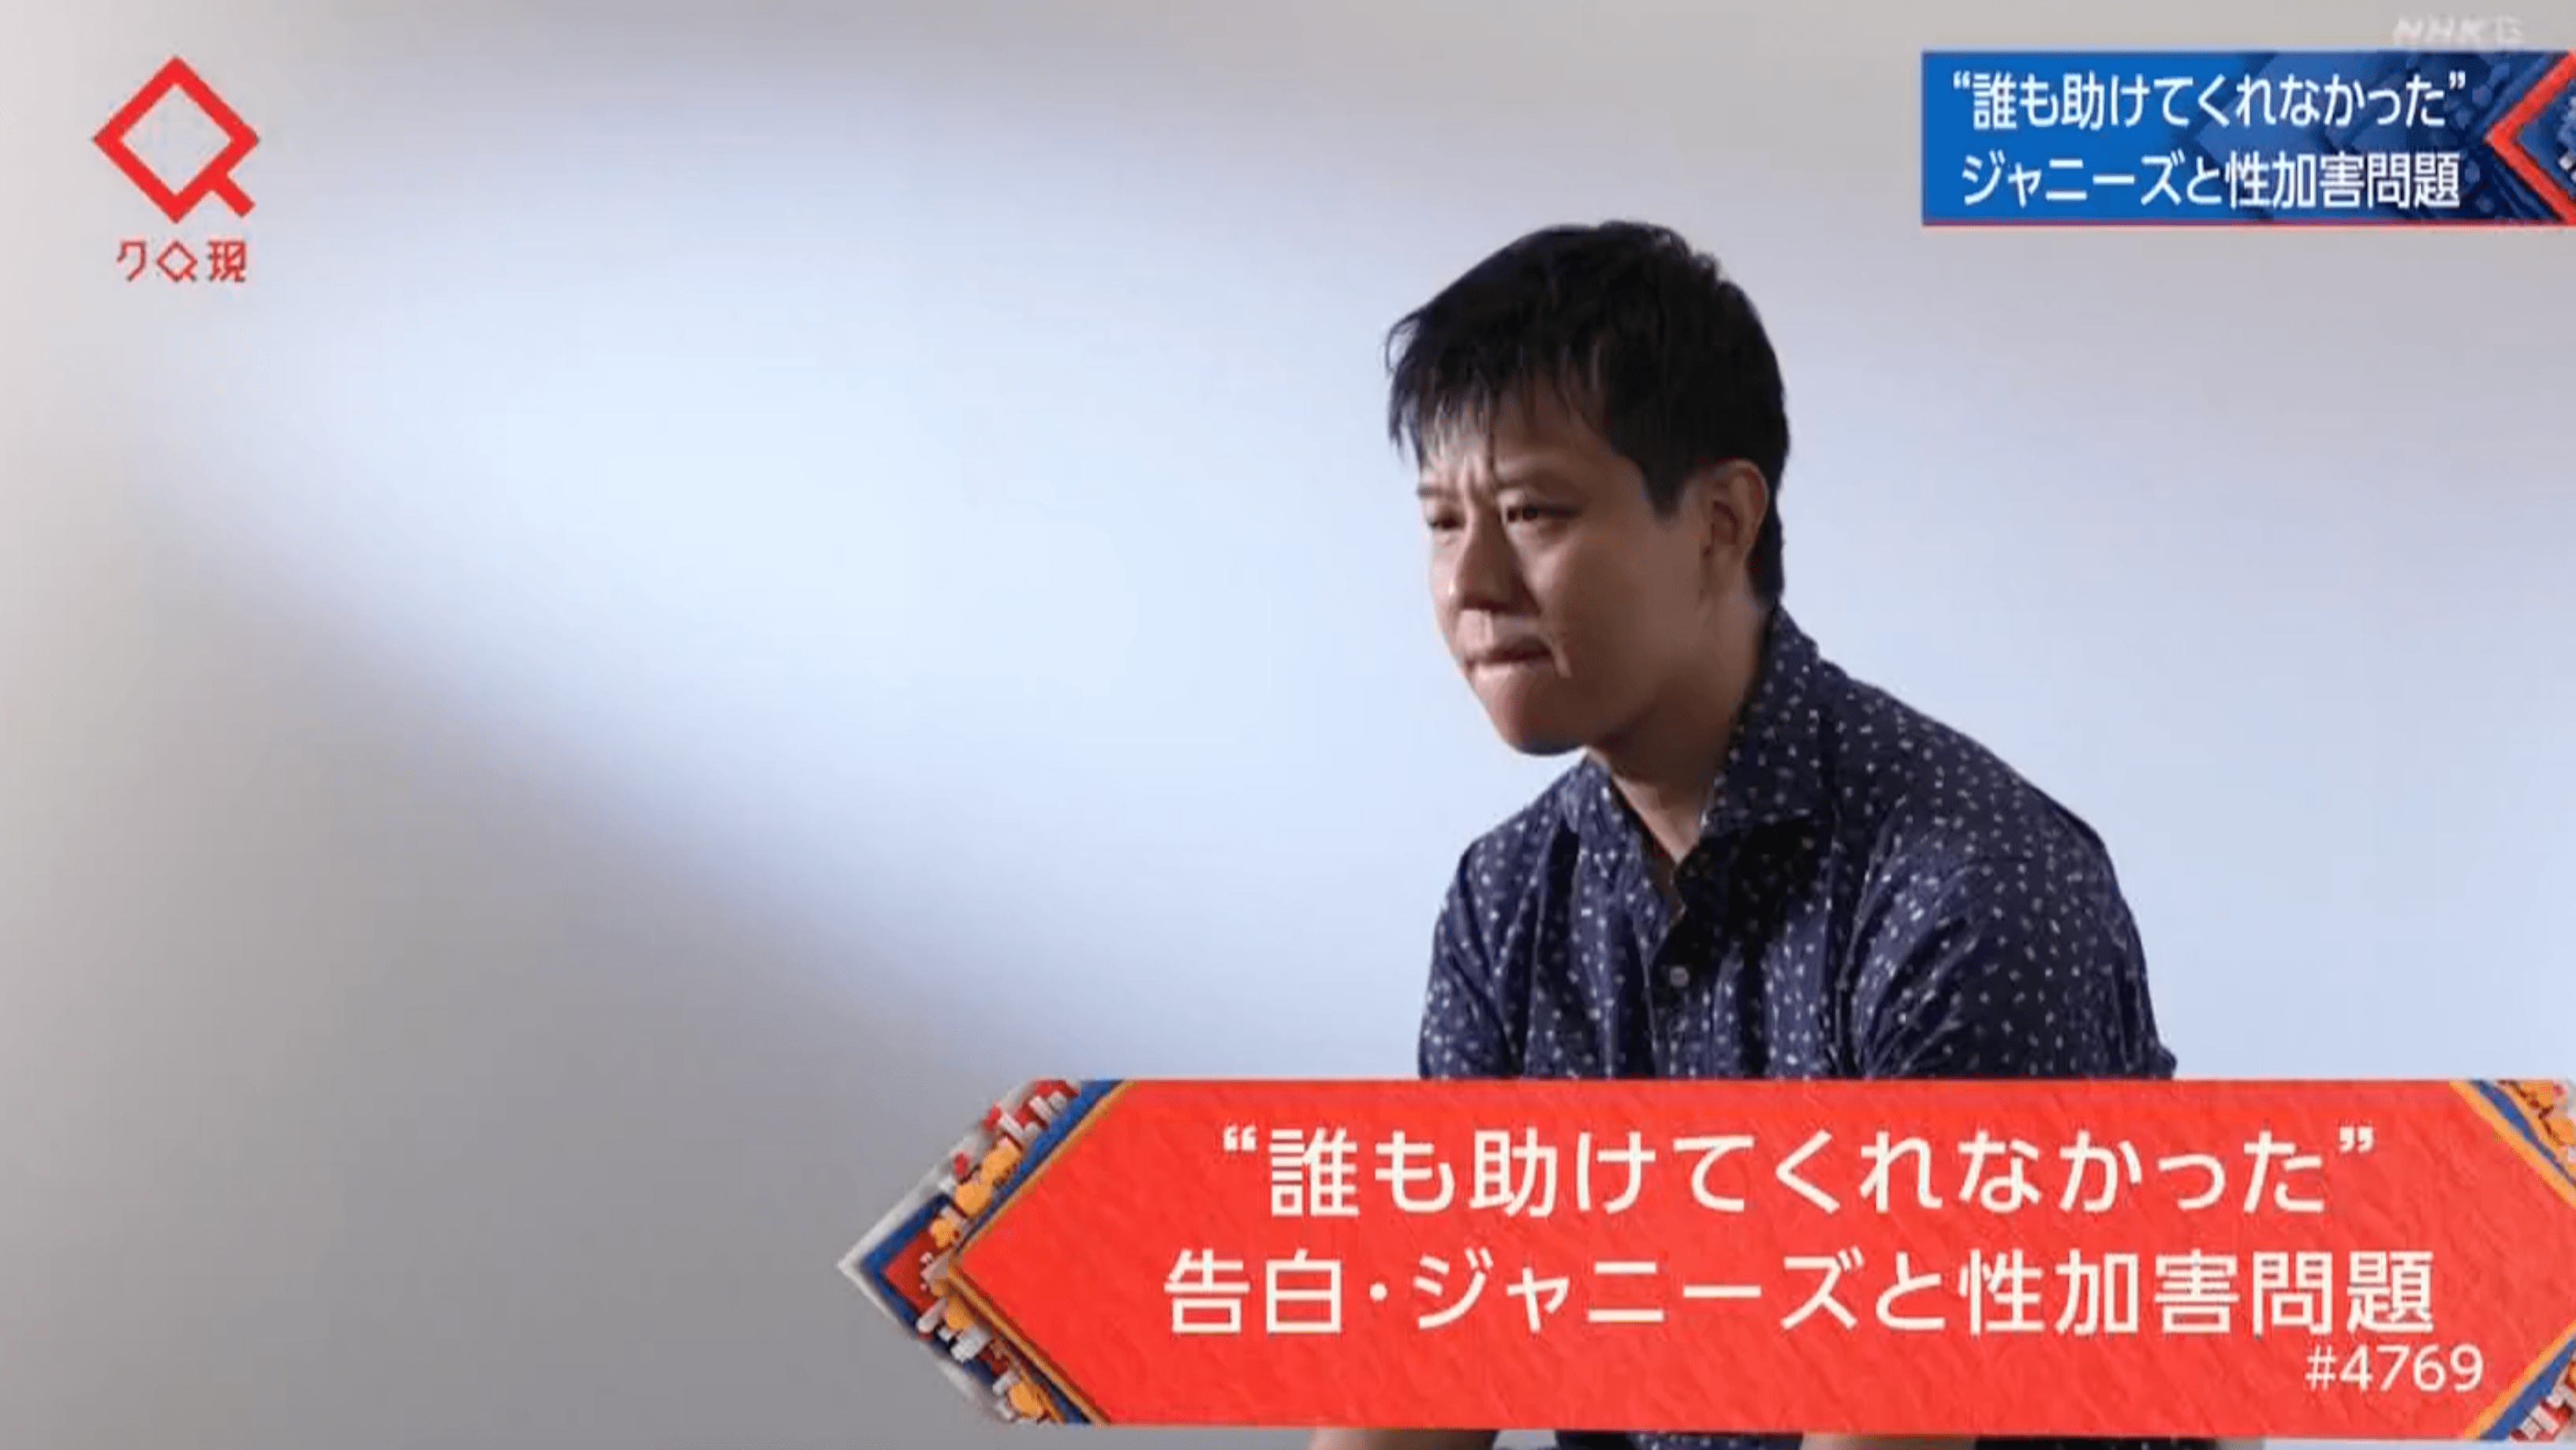 異例の民放批判も…NHK「クローズアップ現代」がジャニー喜多川氏の“性